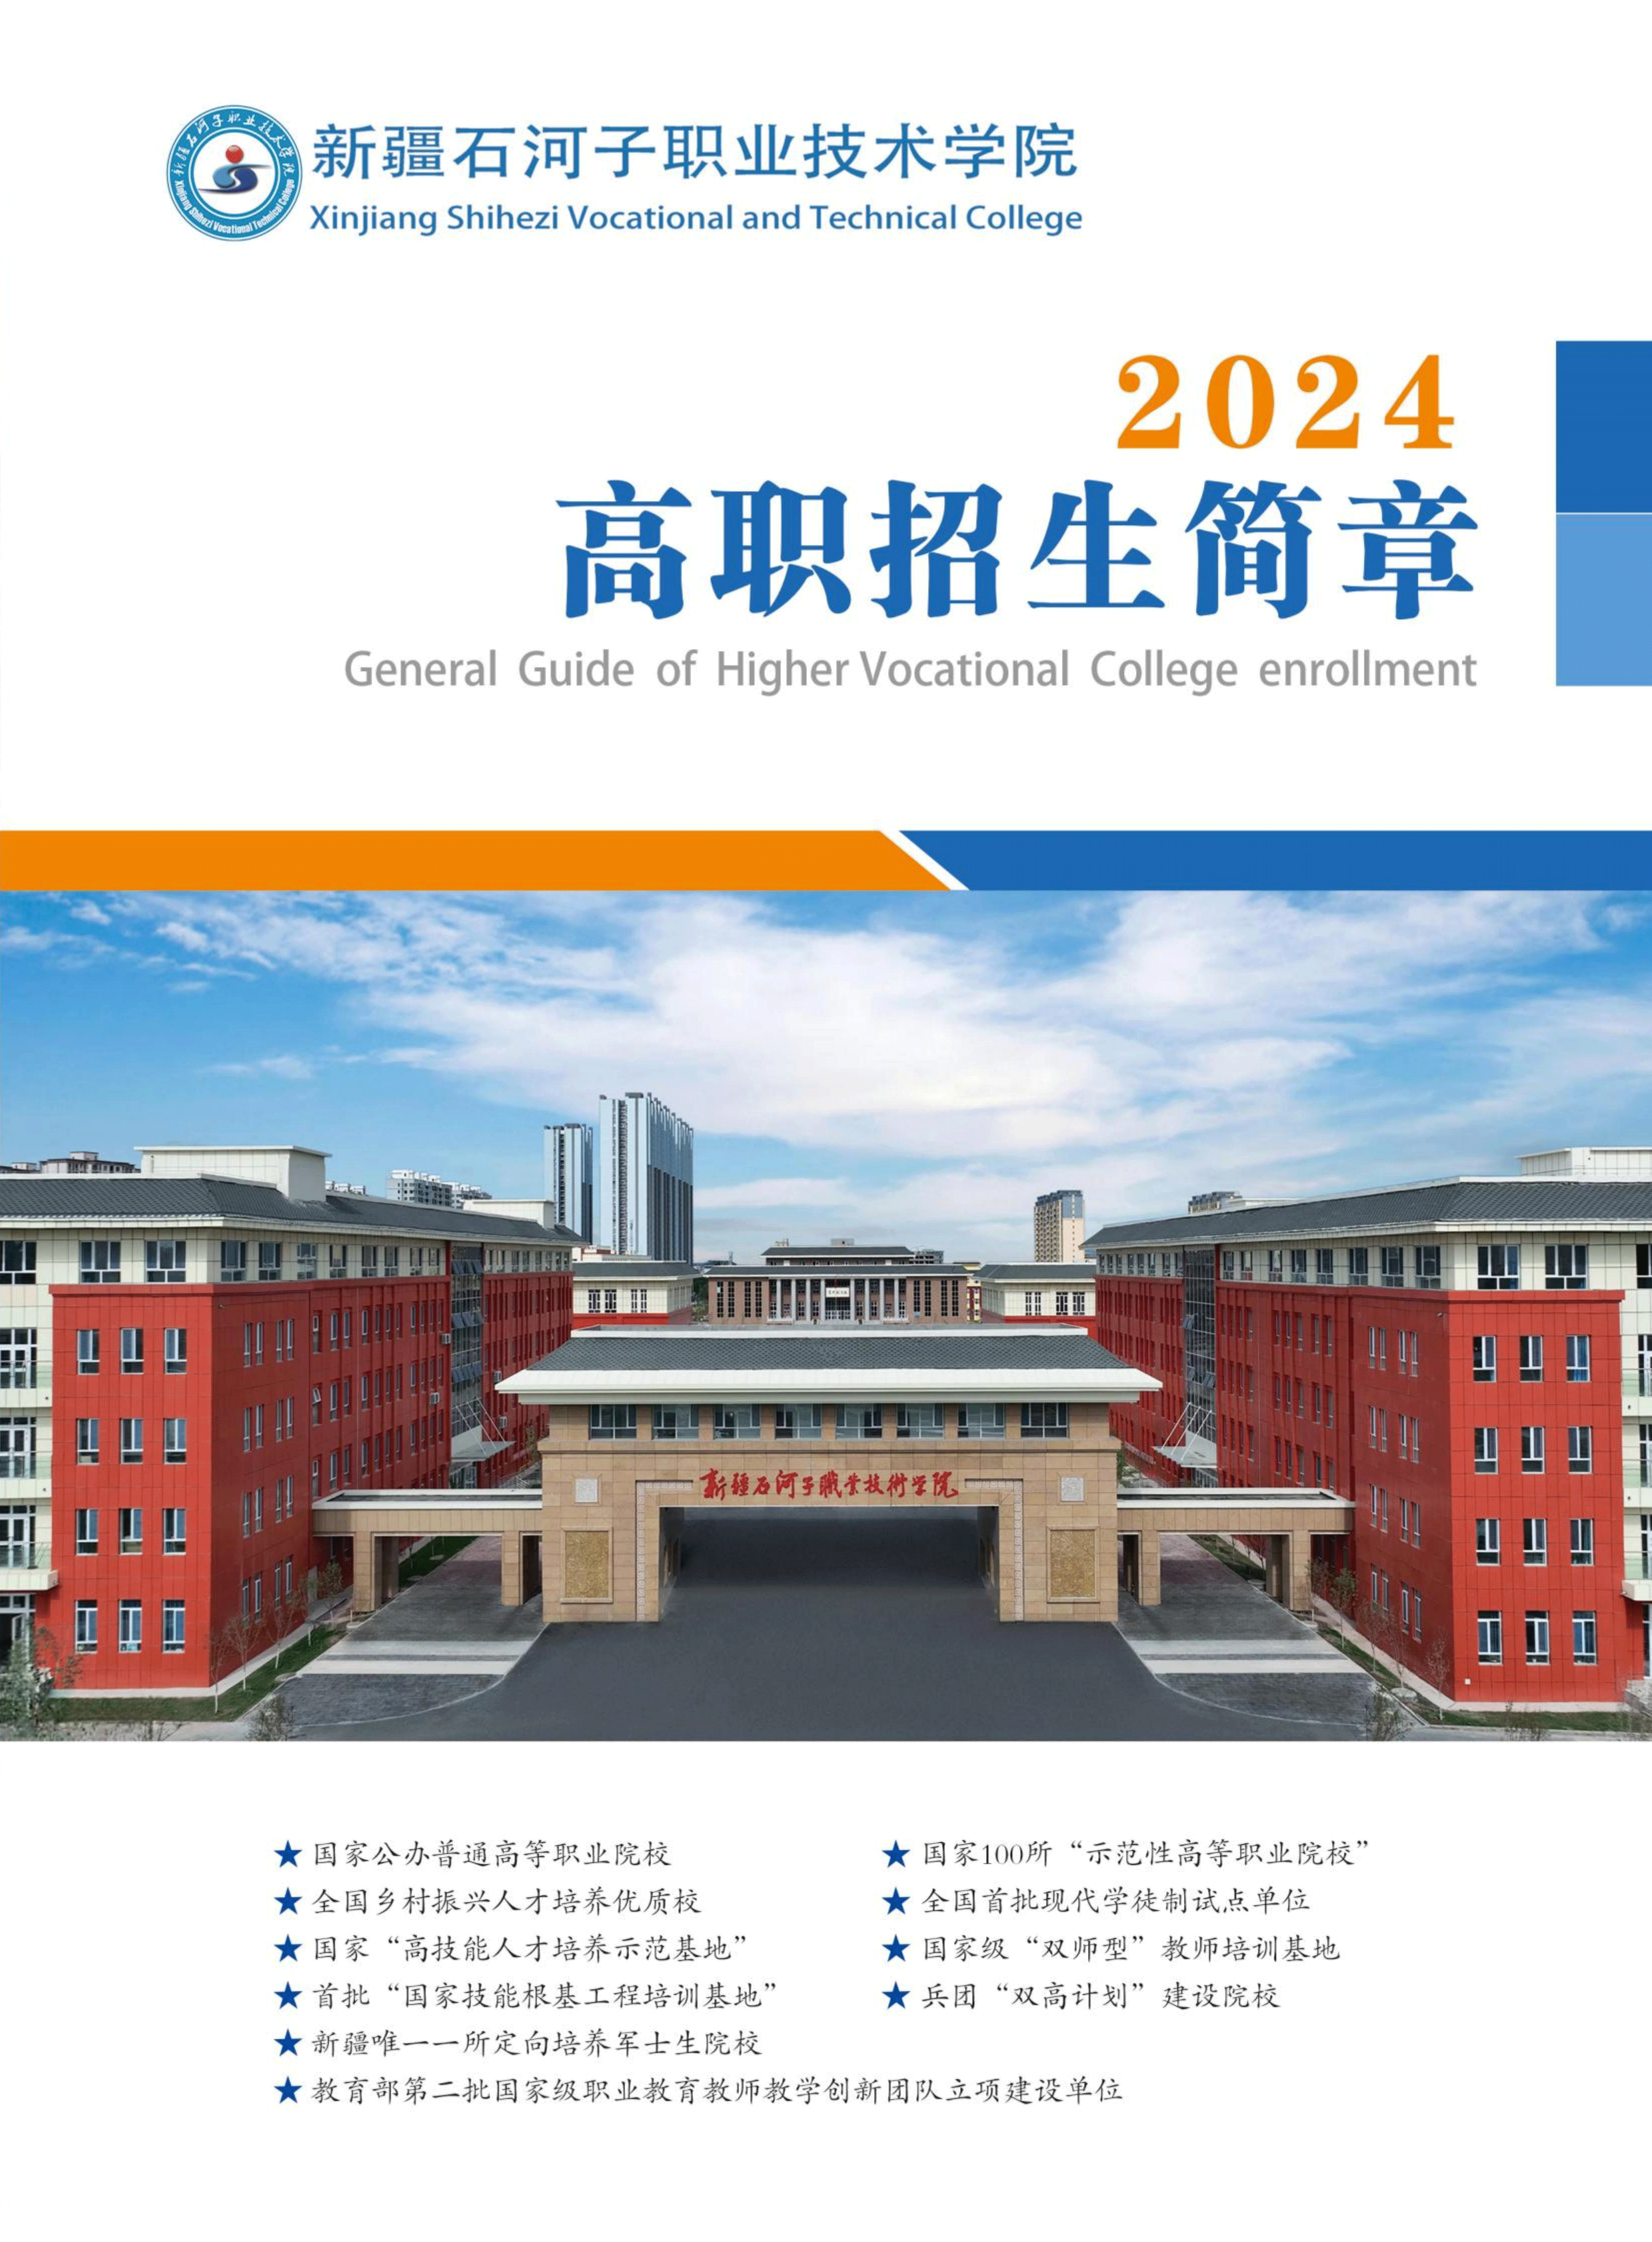 新疆石河子职业技术学院2024年高职招生简章